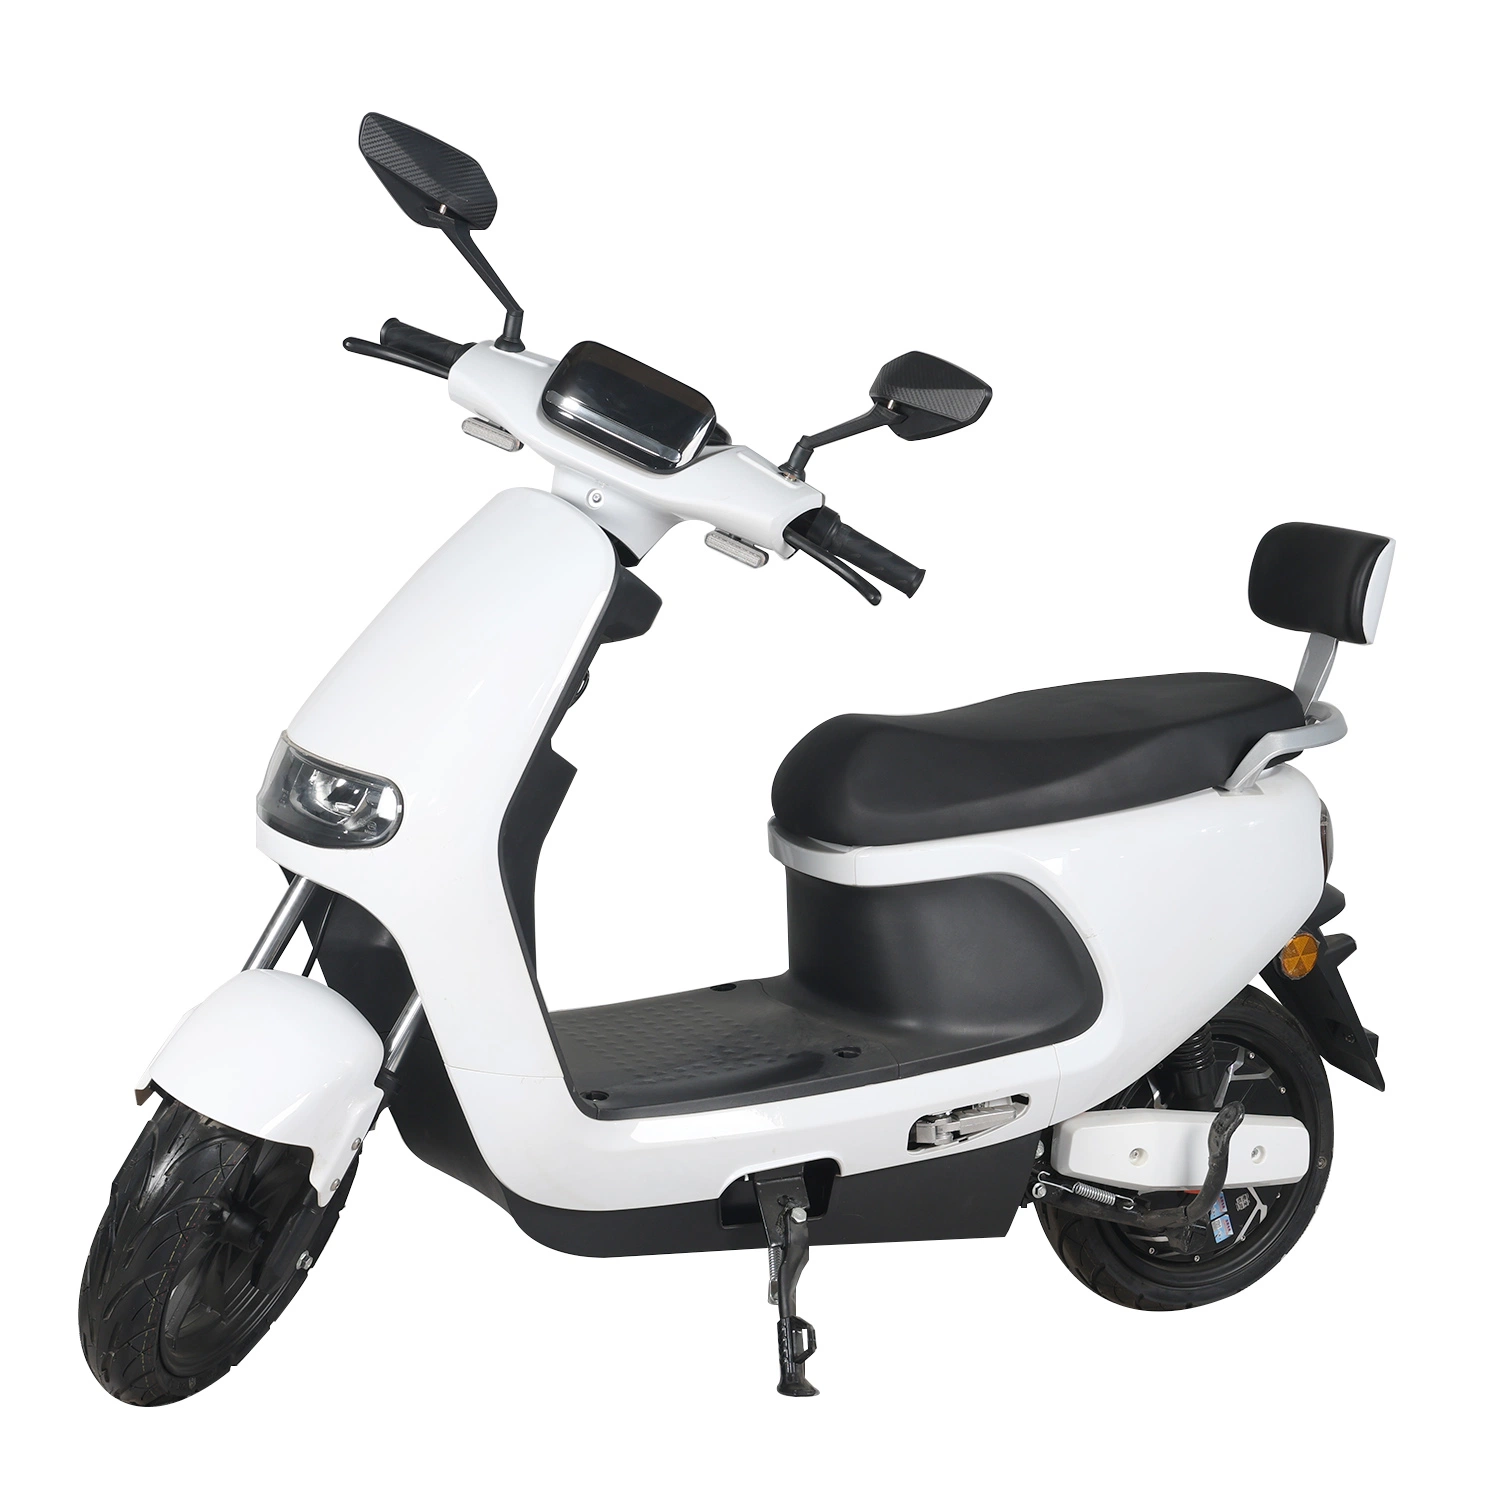 1000W Electric Motorcycle Best-Seller avec batterie au lithium Portable Sport E-scooter cyclomoteur pour adulte